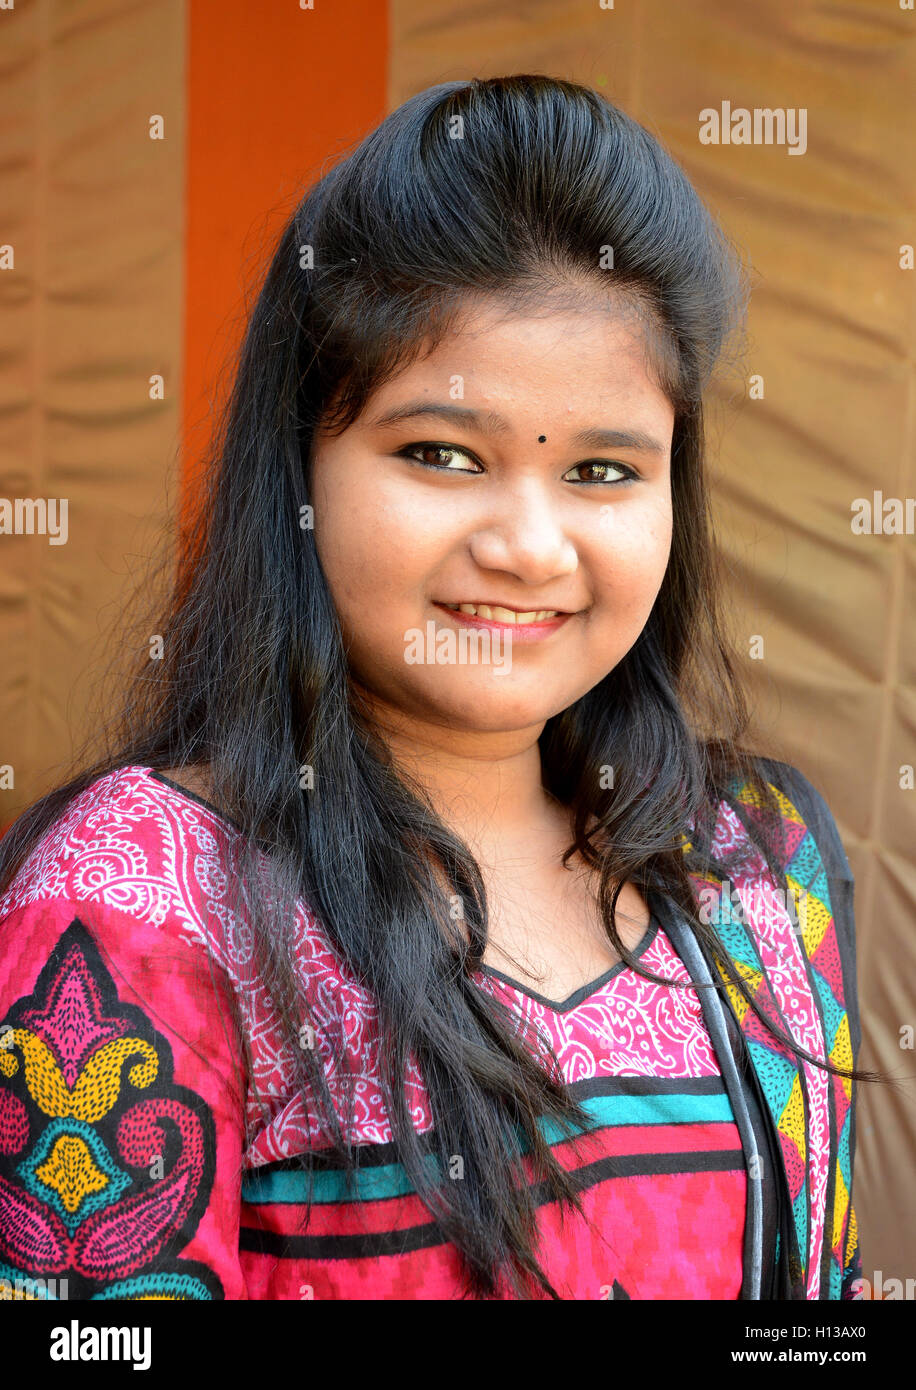 Indische Mädchen - eine schöne indische Mädchen auf Partei Gelegenheit. Stockfoto